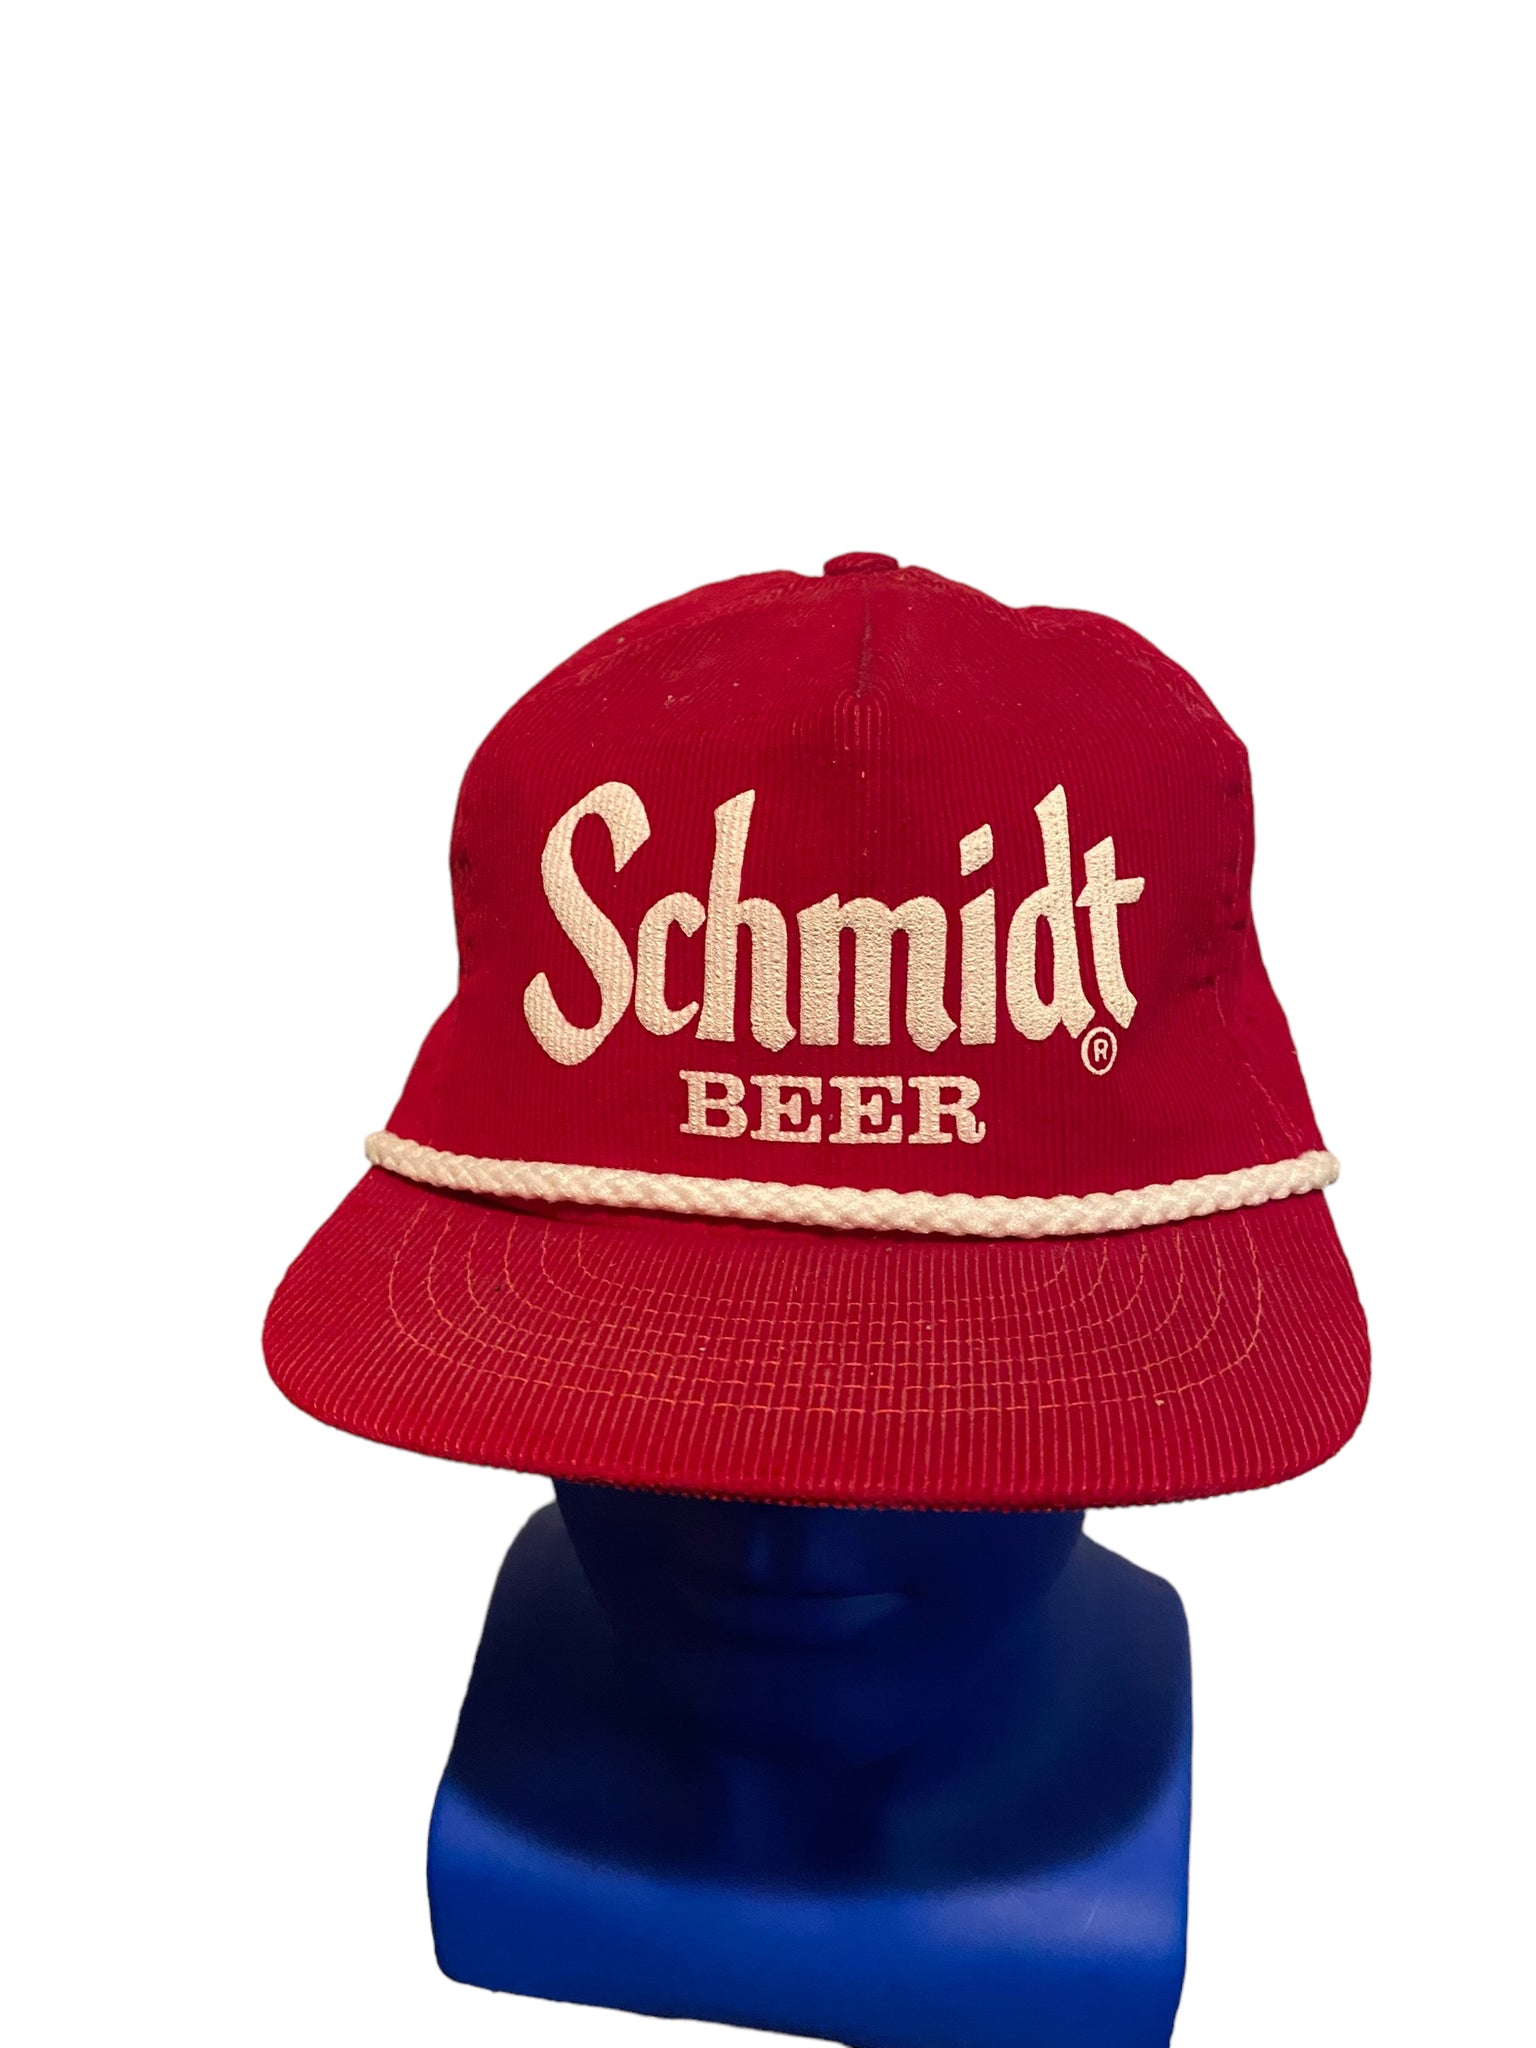 Rare vintage Schmidt beer rope corduroy hat snapback Very Clean  Made In USA